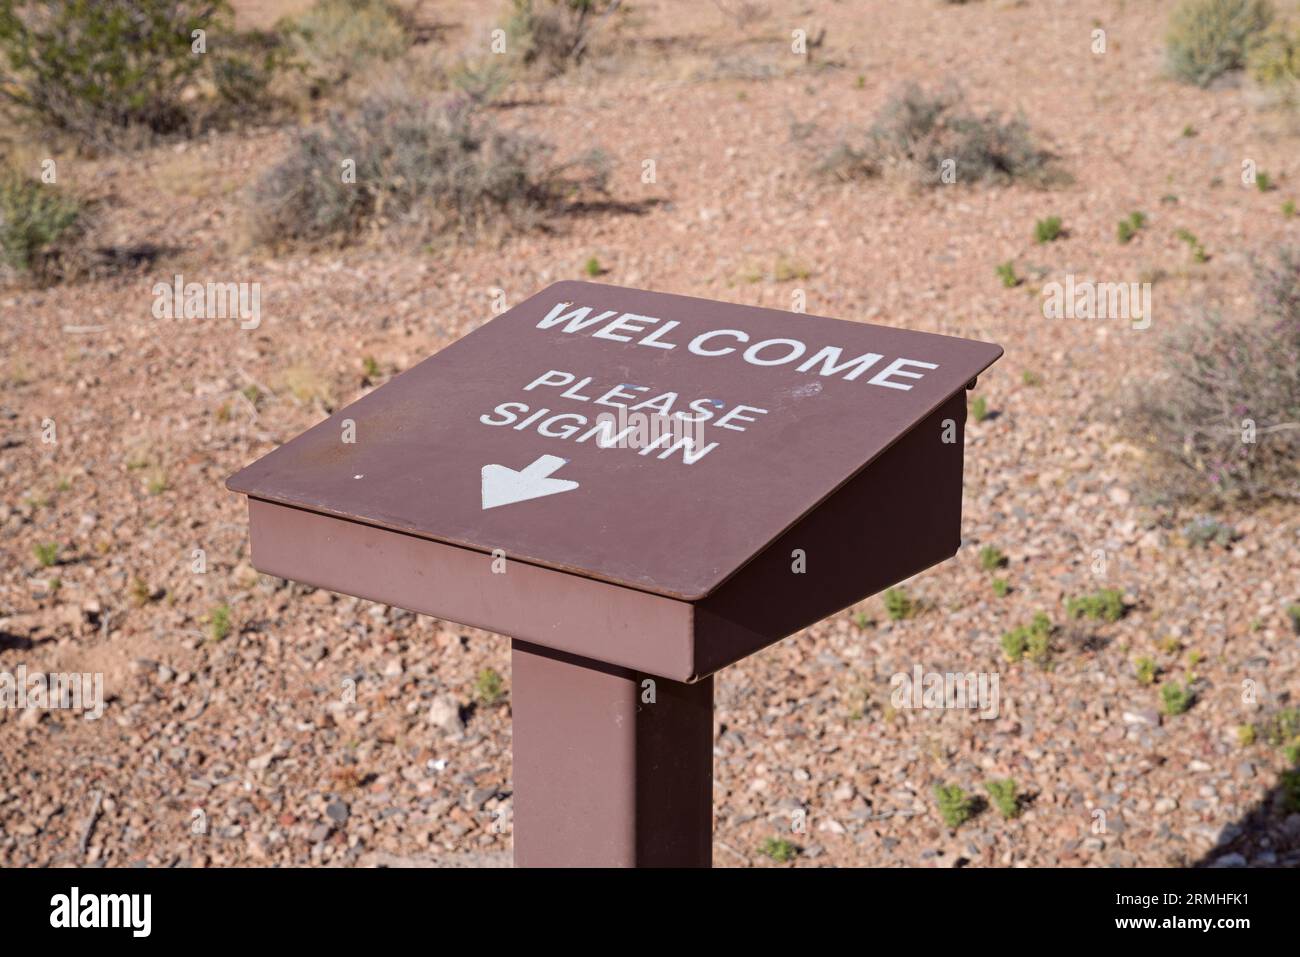 bienvenue s'il vous plaît inscrivez-vous écrit sur le panneau de registre de trailhead en métal brun dans le désert Banque D'Images